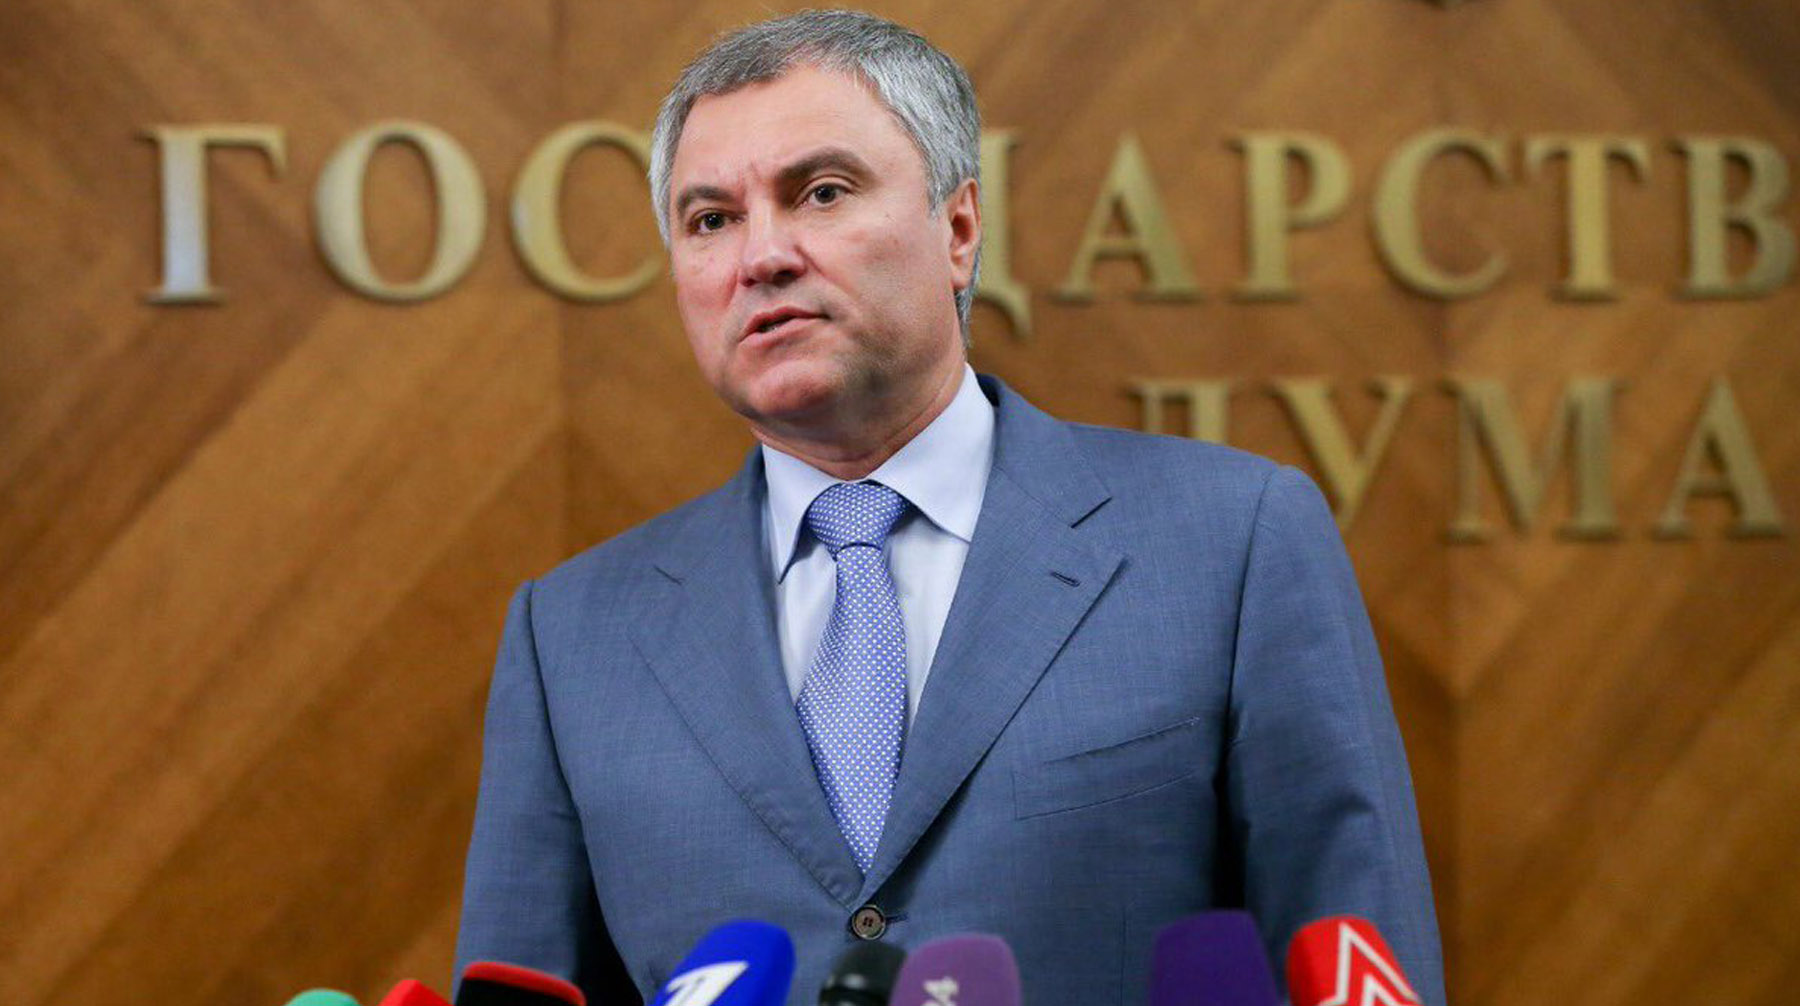 Парламентарии также призывают ограничить денежные переводы в эту страну Вячеслав Володин